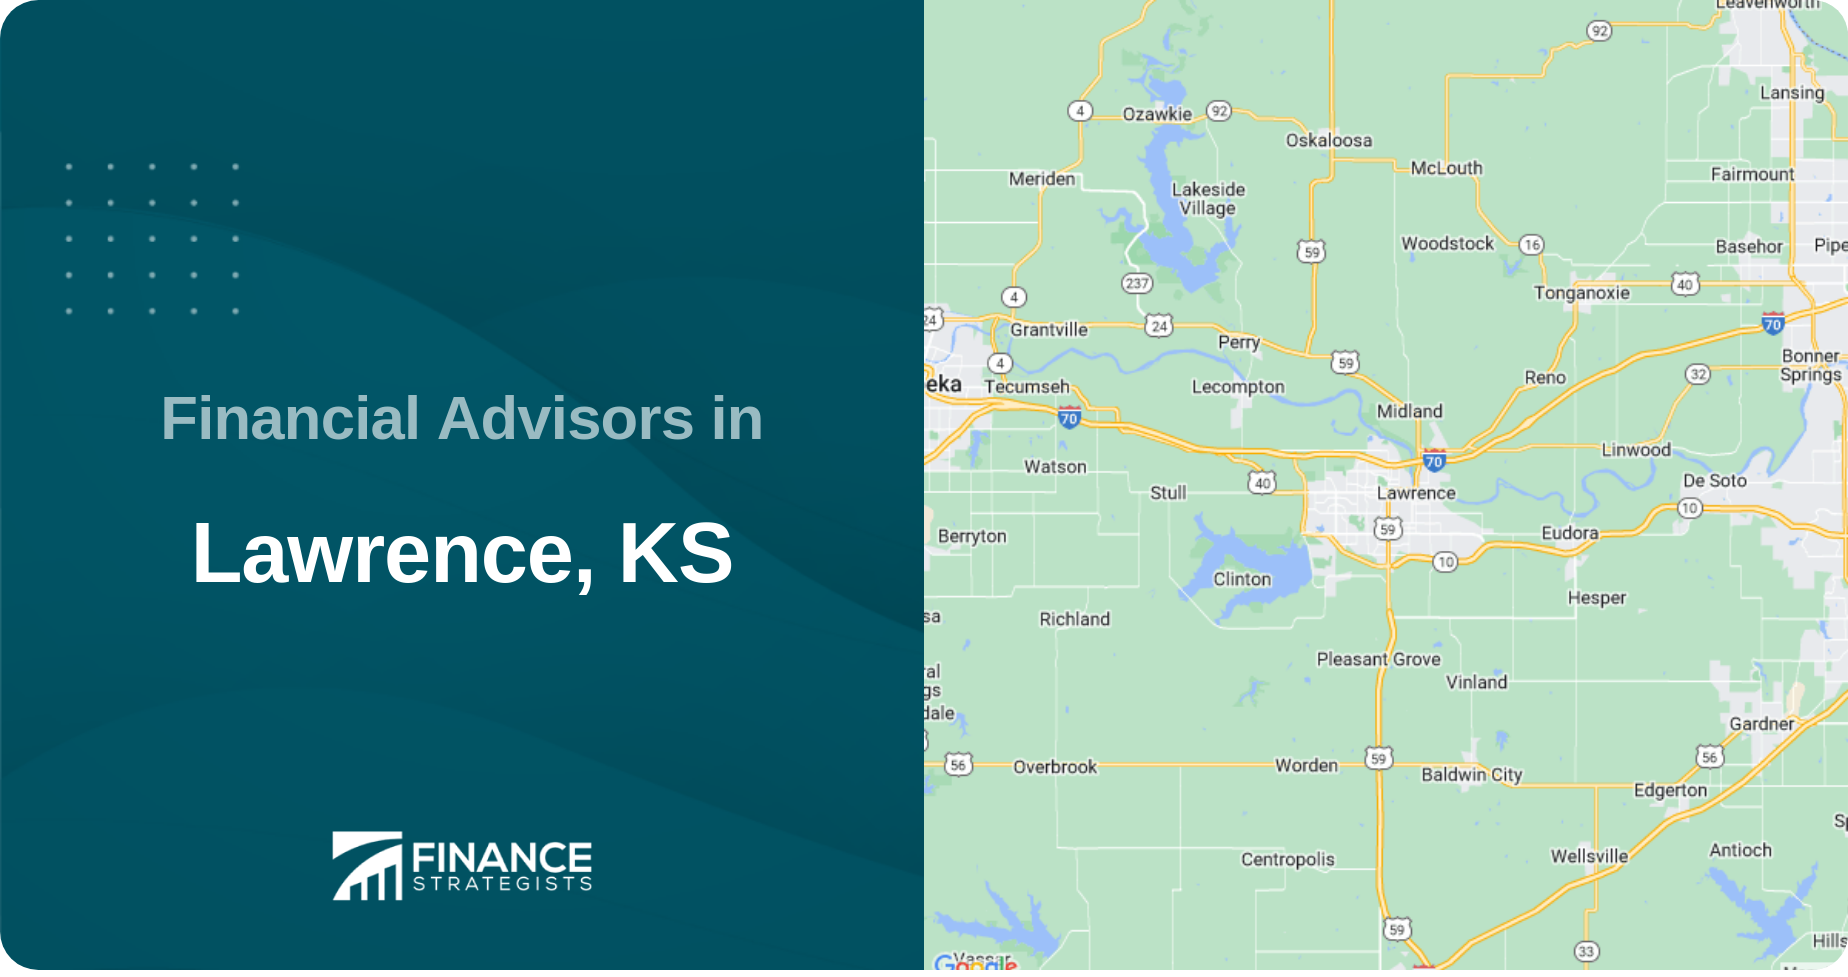 Financial Advisors in Lawrence, KS